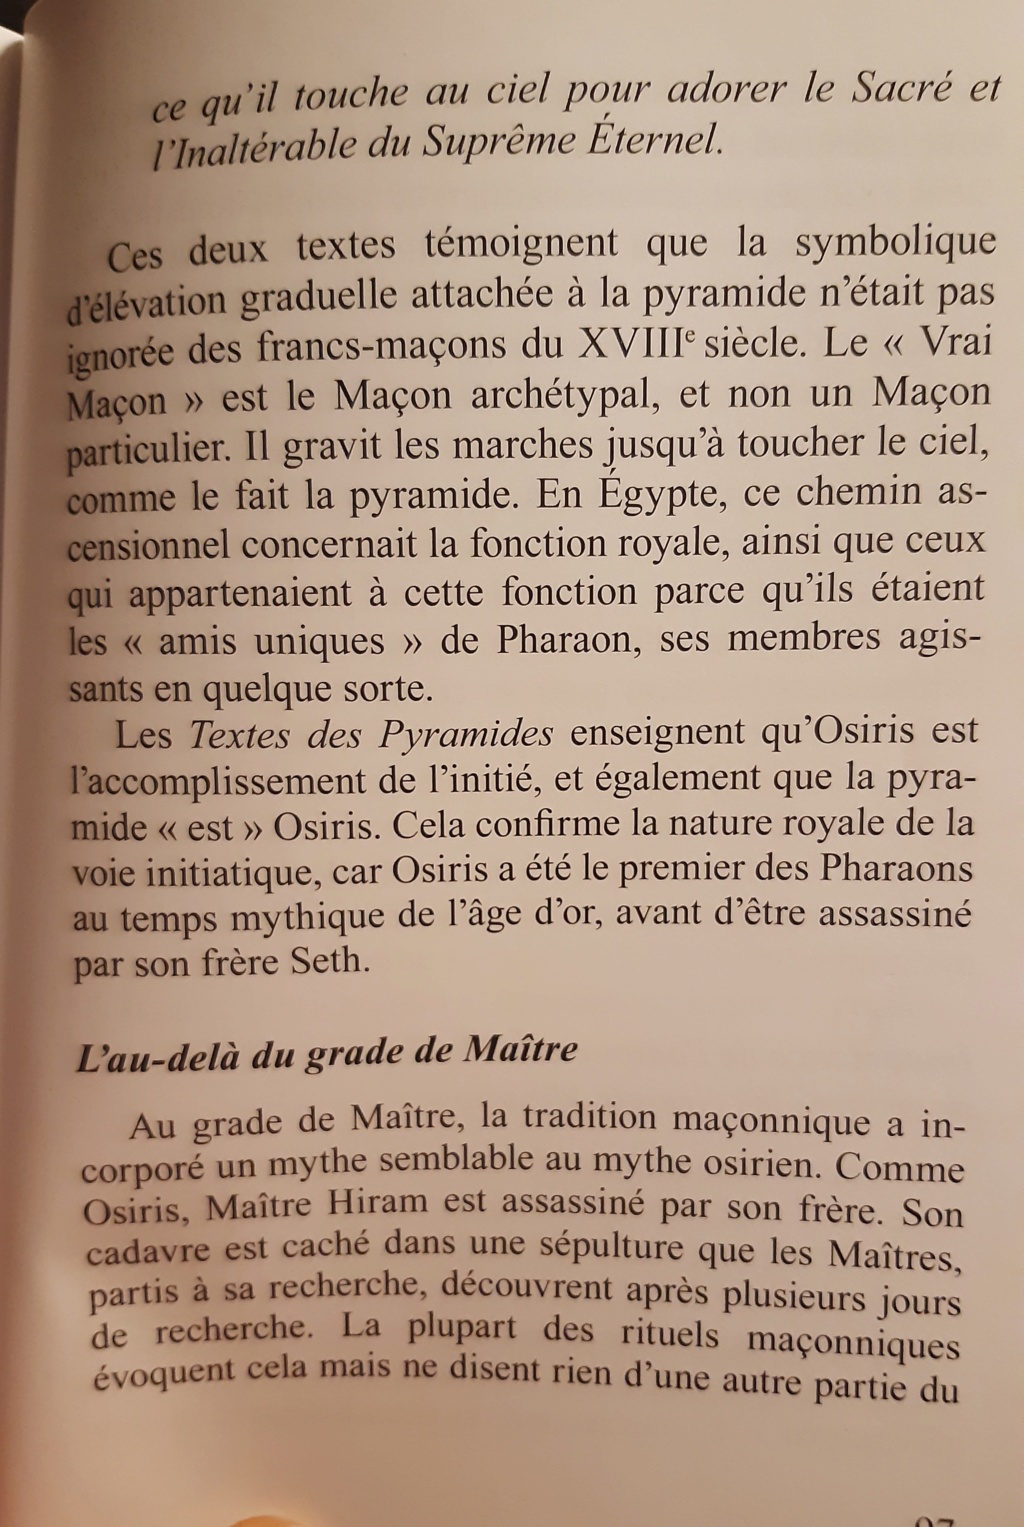 franc - Franc-maçonnerie, mea culpa ? - Page 13 20200311